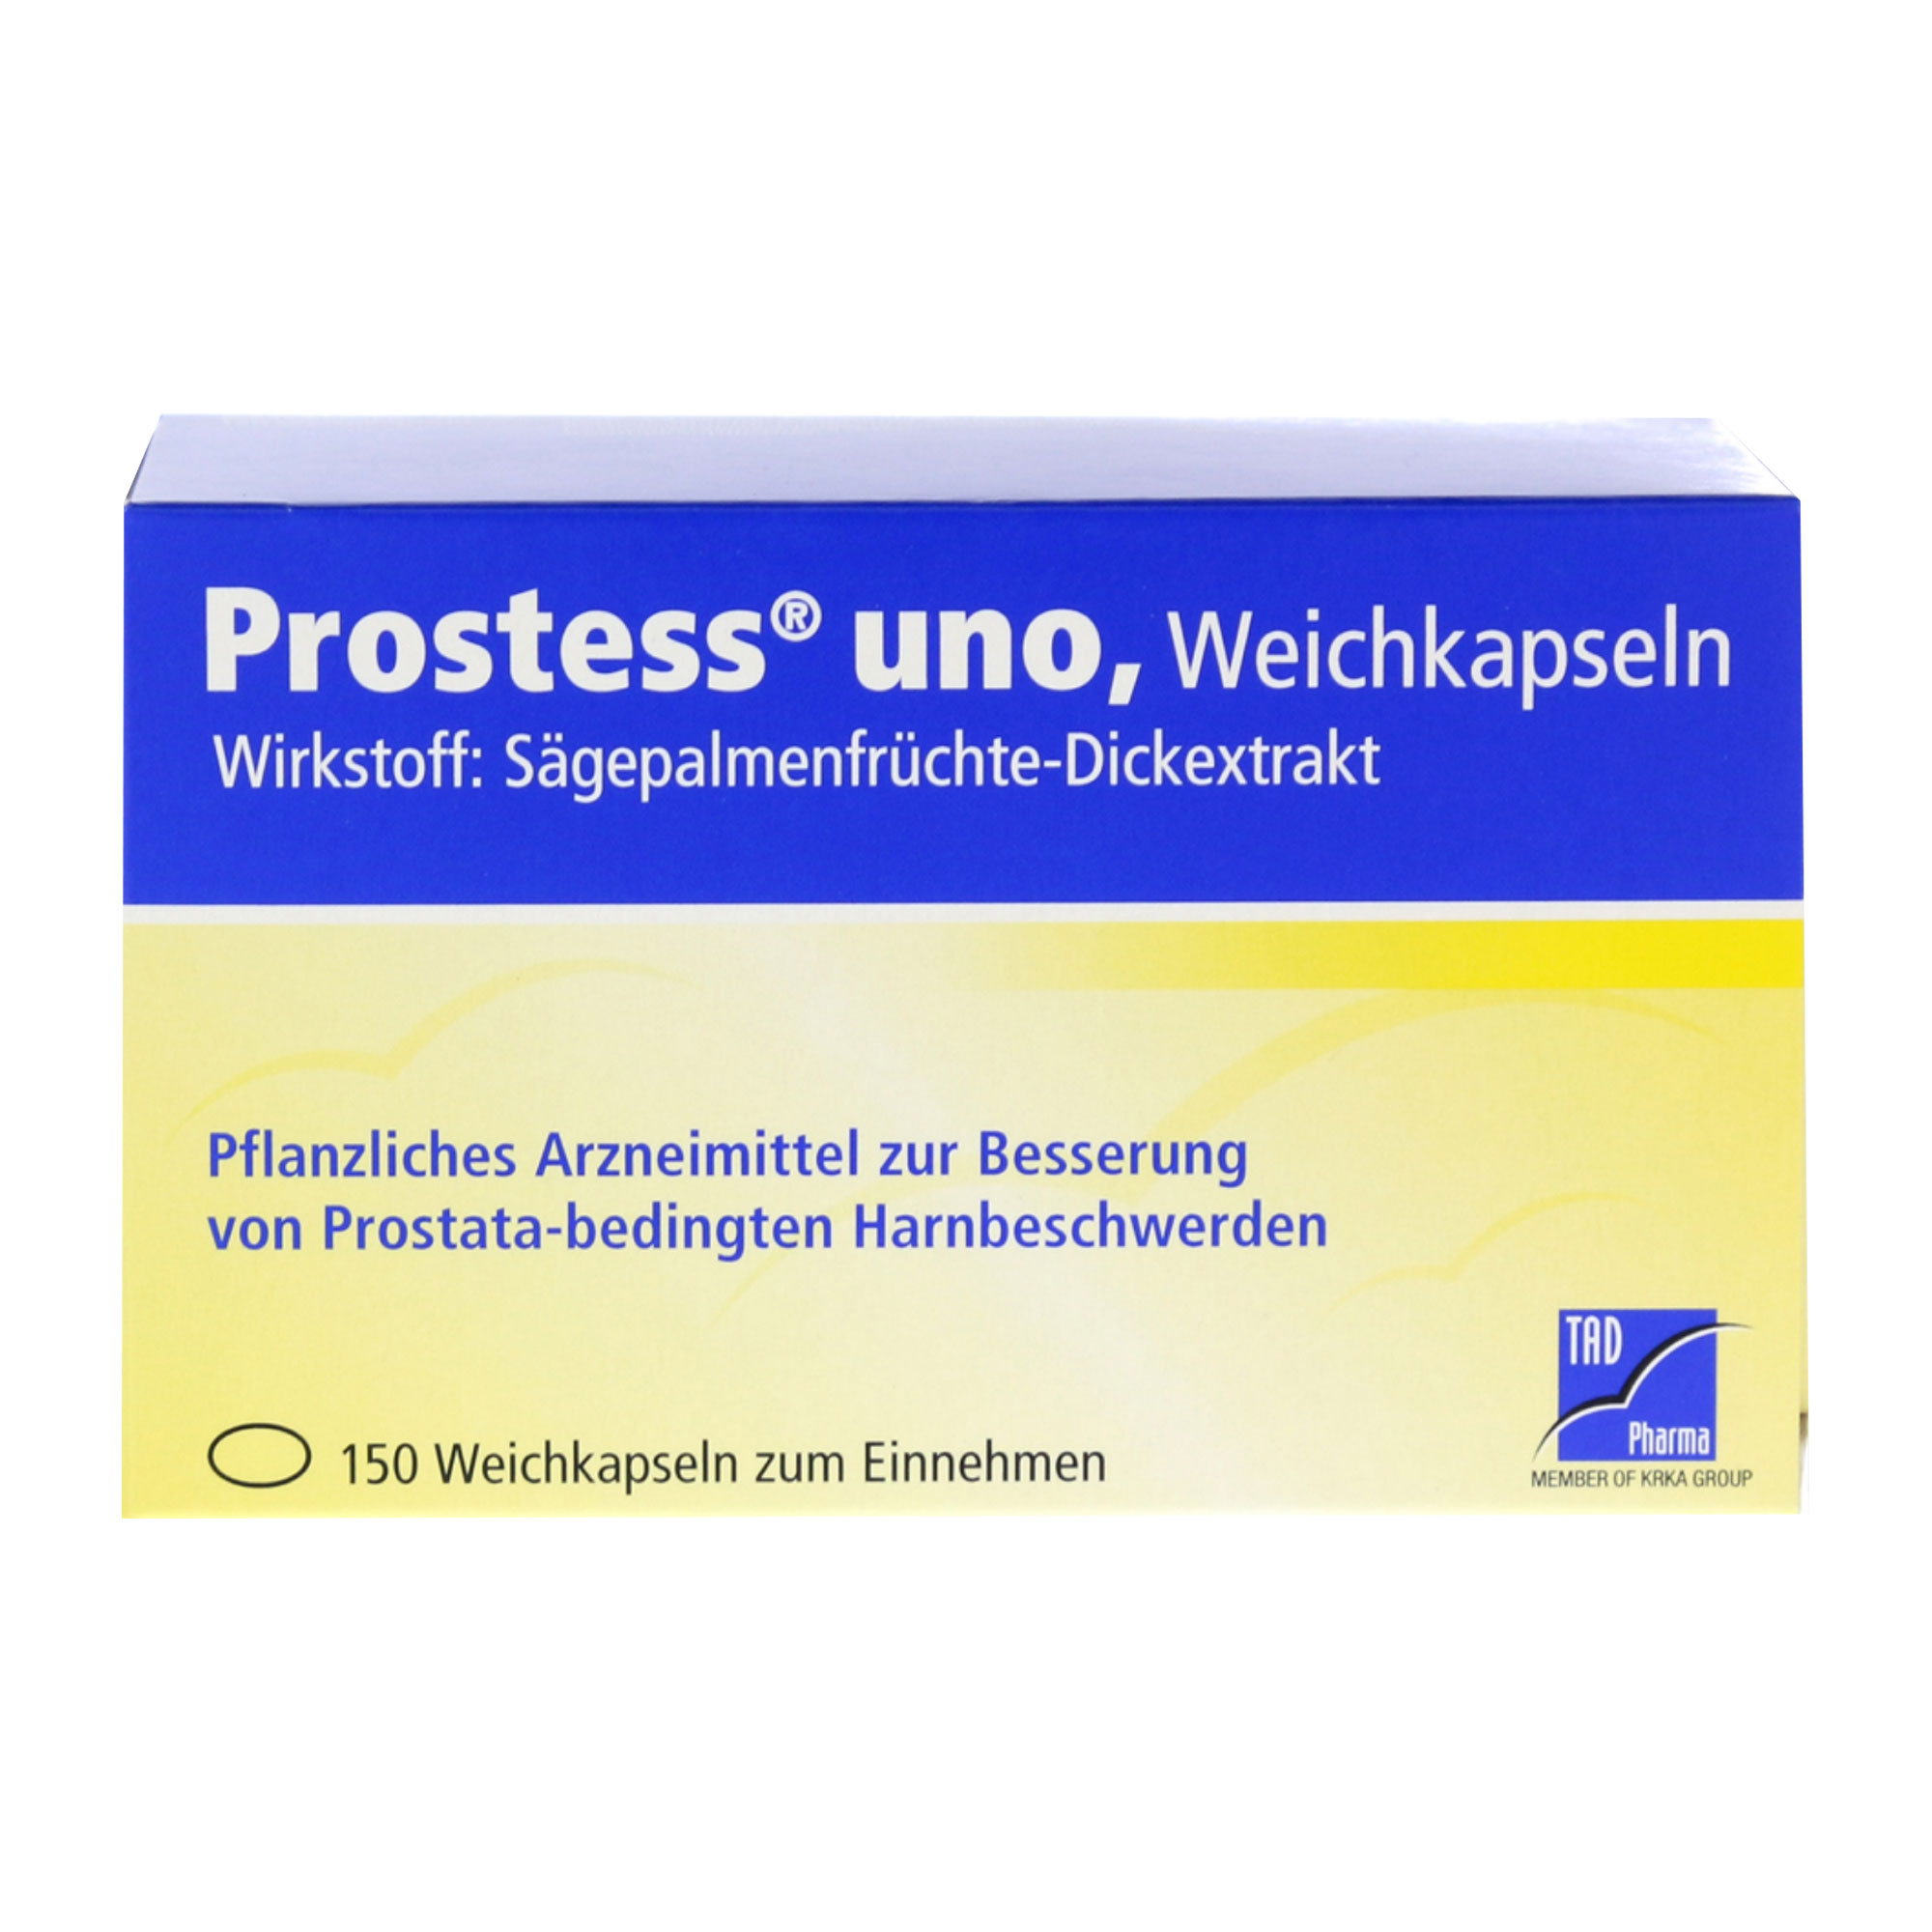 Prostess uno ist ein pflanzliches Arzneimittel zur Besserung von Prostata-bedingten Harnbeschwerden.